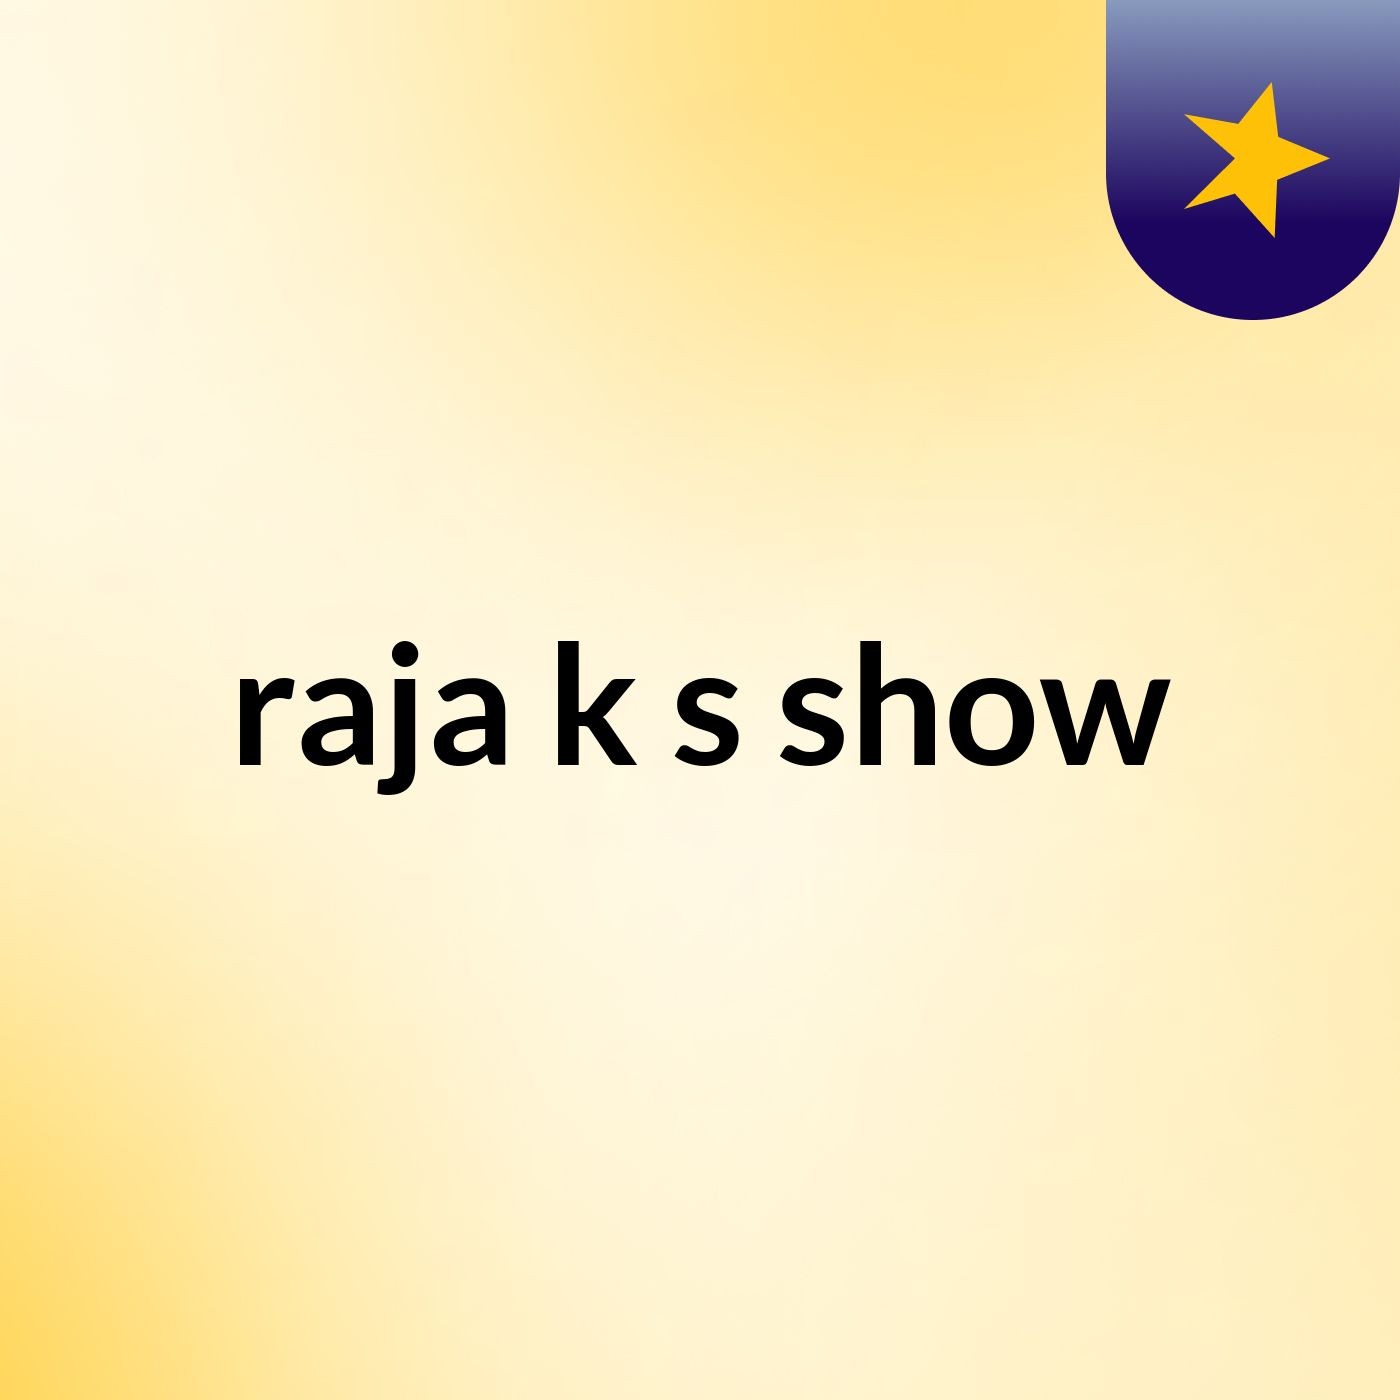 raja k's show